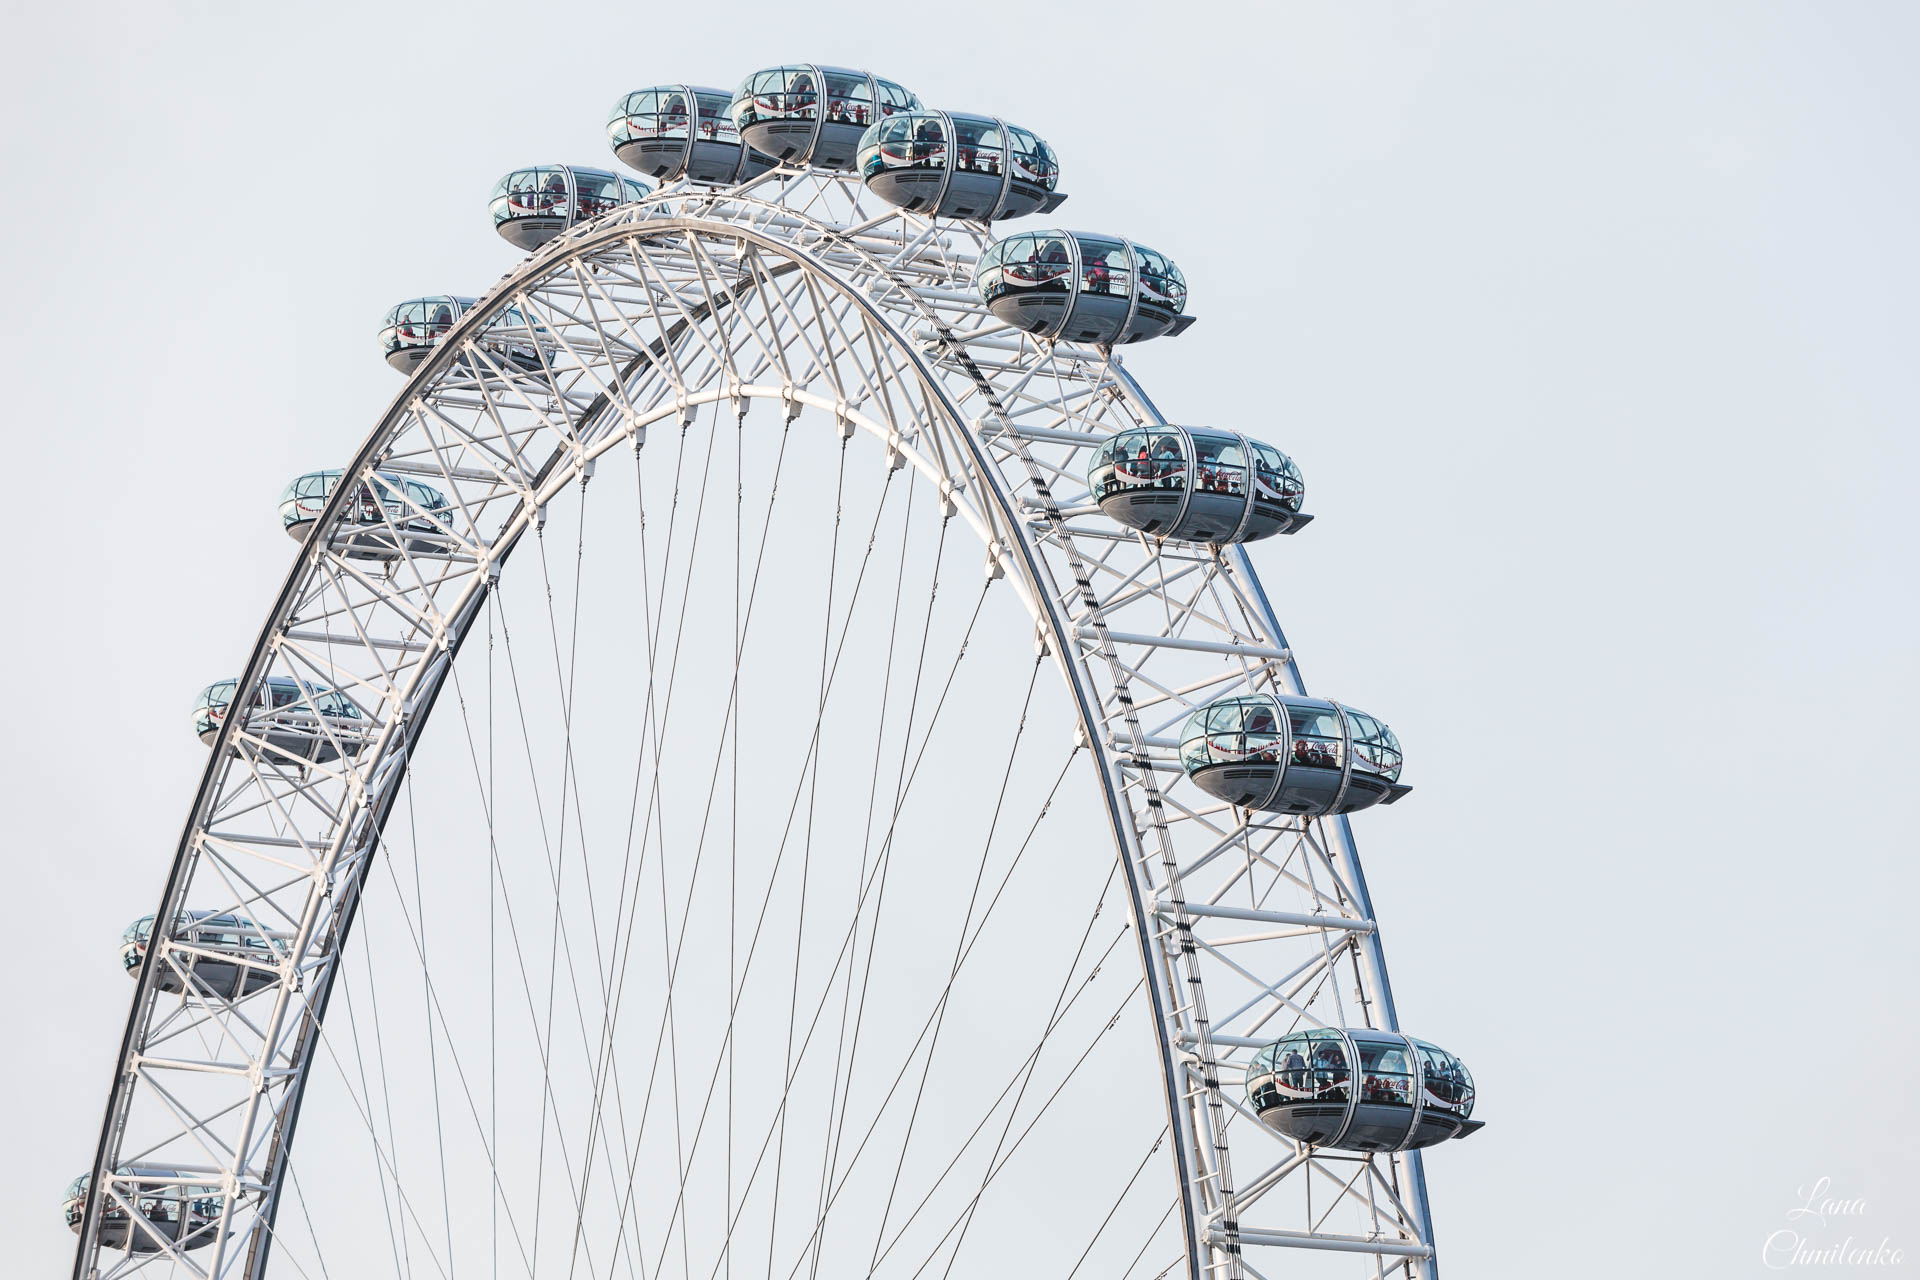 London Eye - Ferris wheel